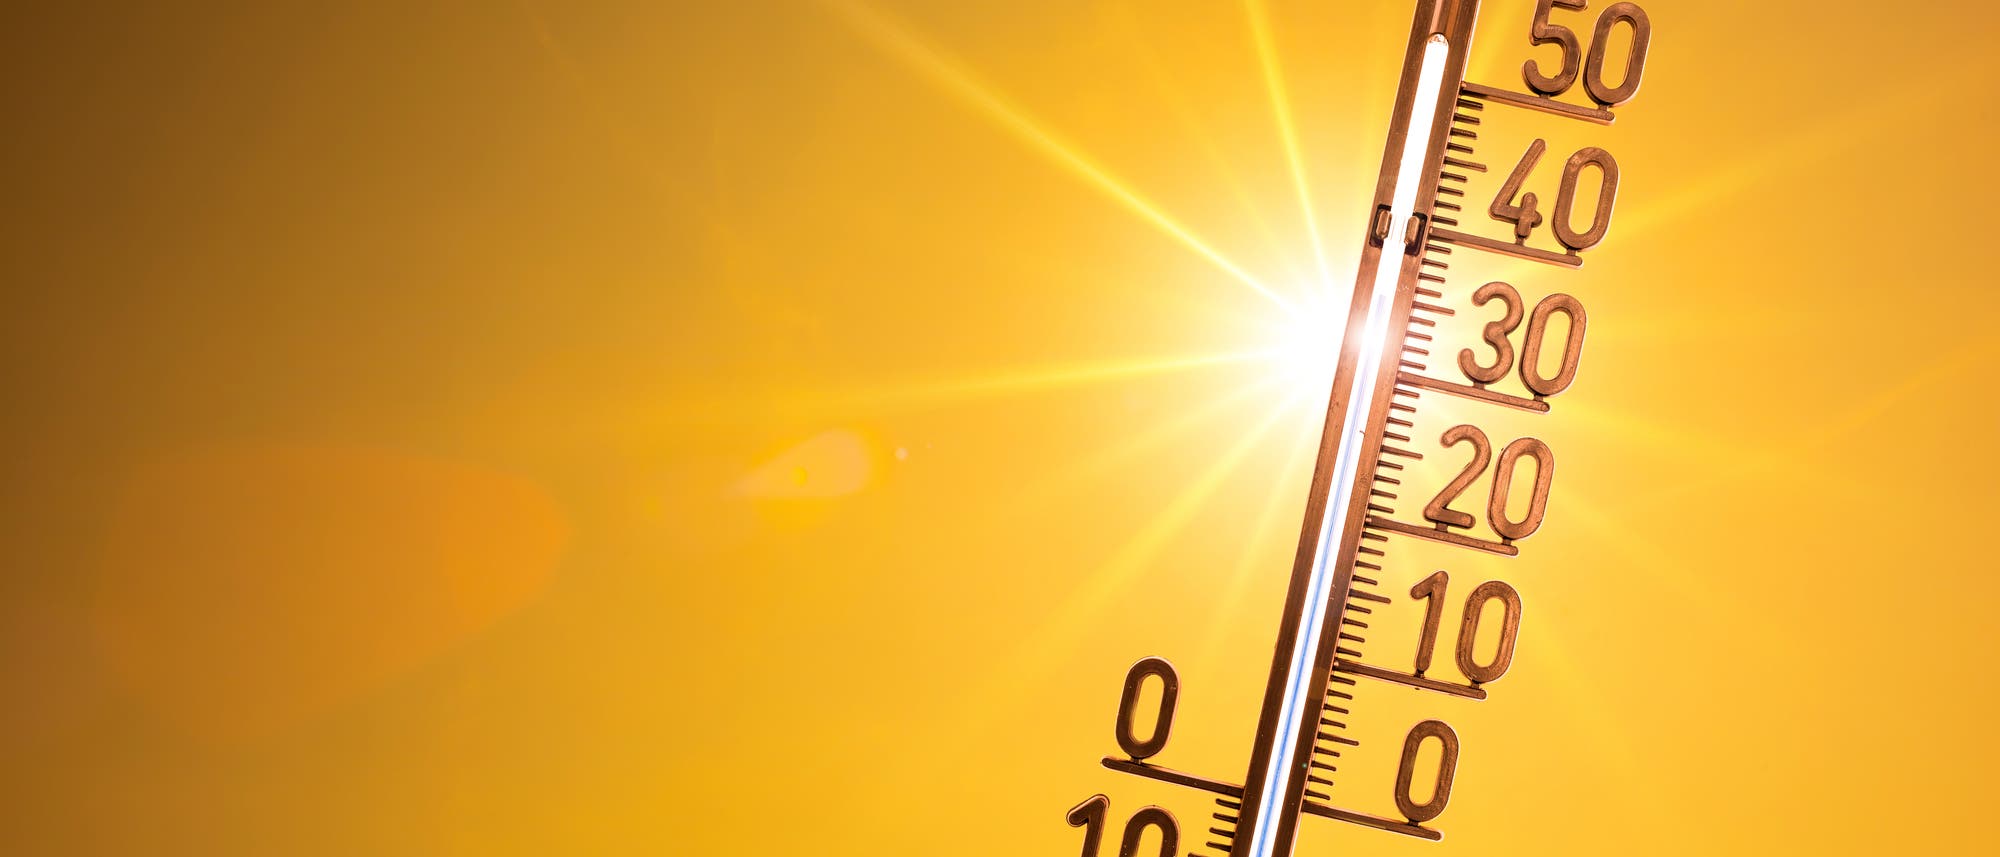 Ein Thermometer vor der Sonne in einem orangefarbenen Himmel zeigt 35 Grad.